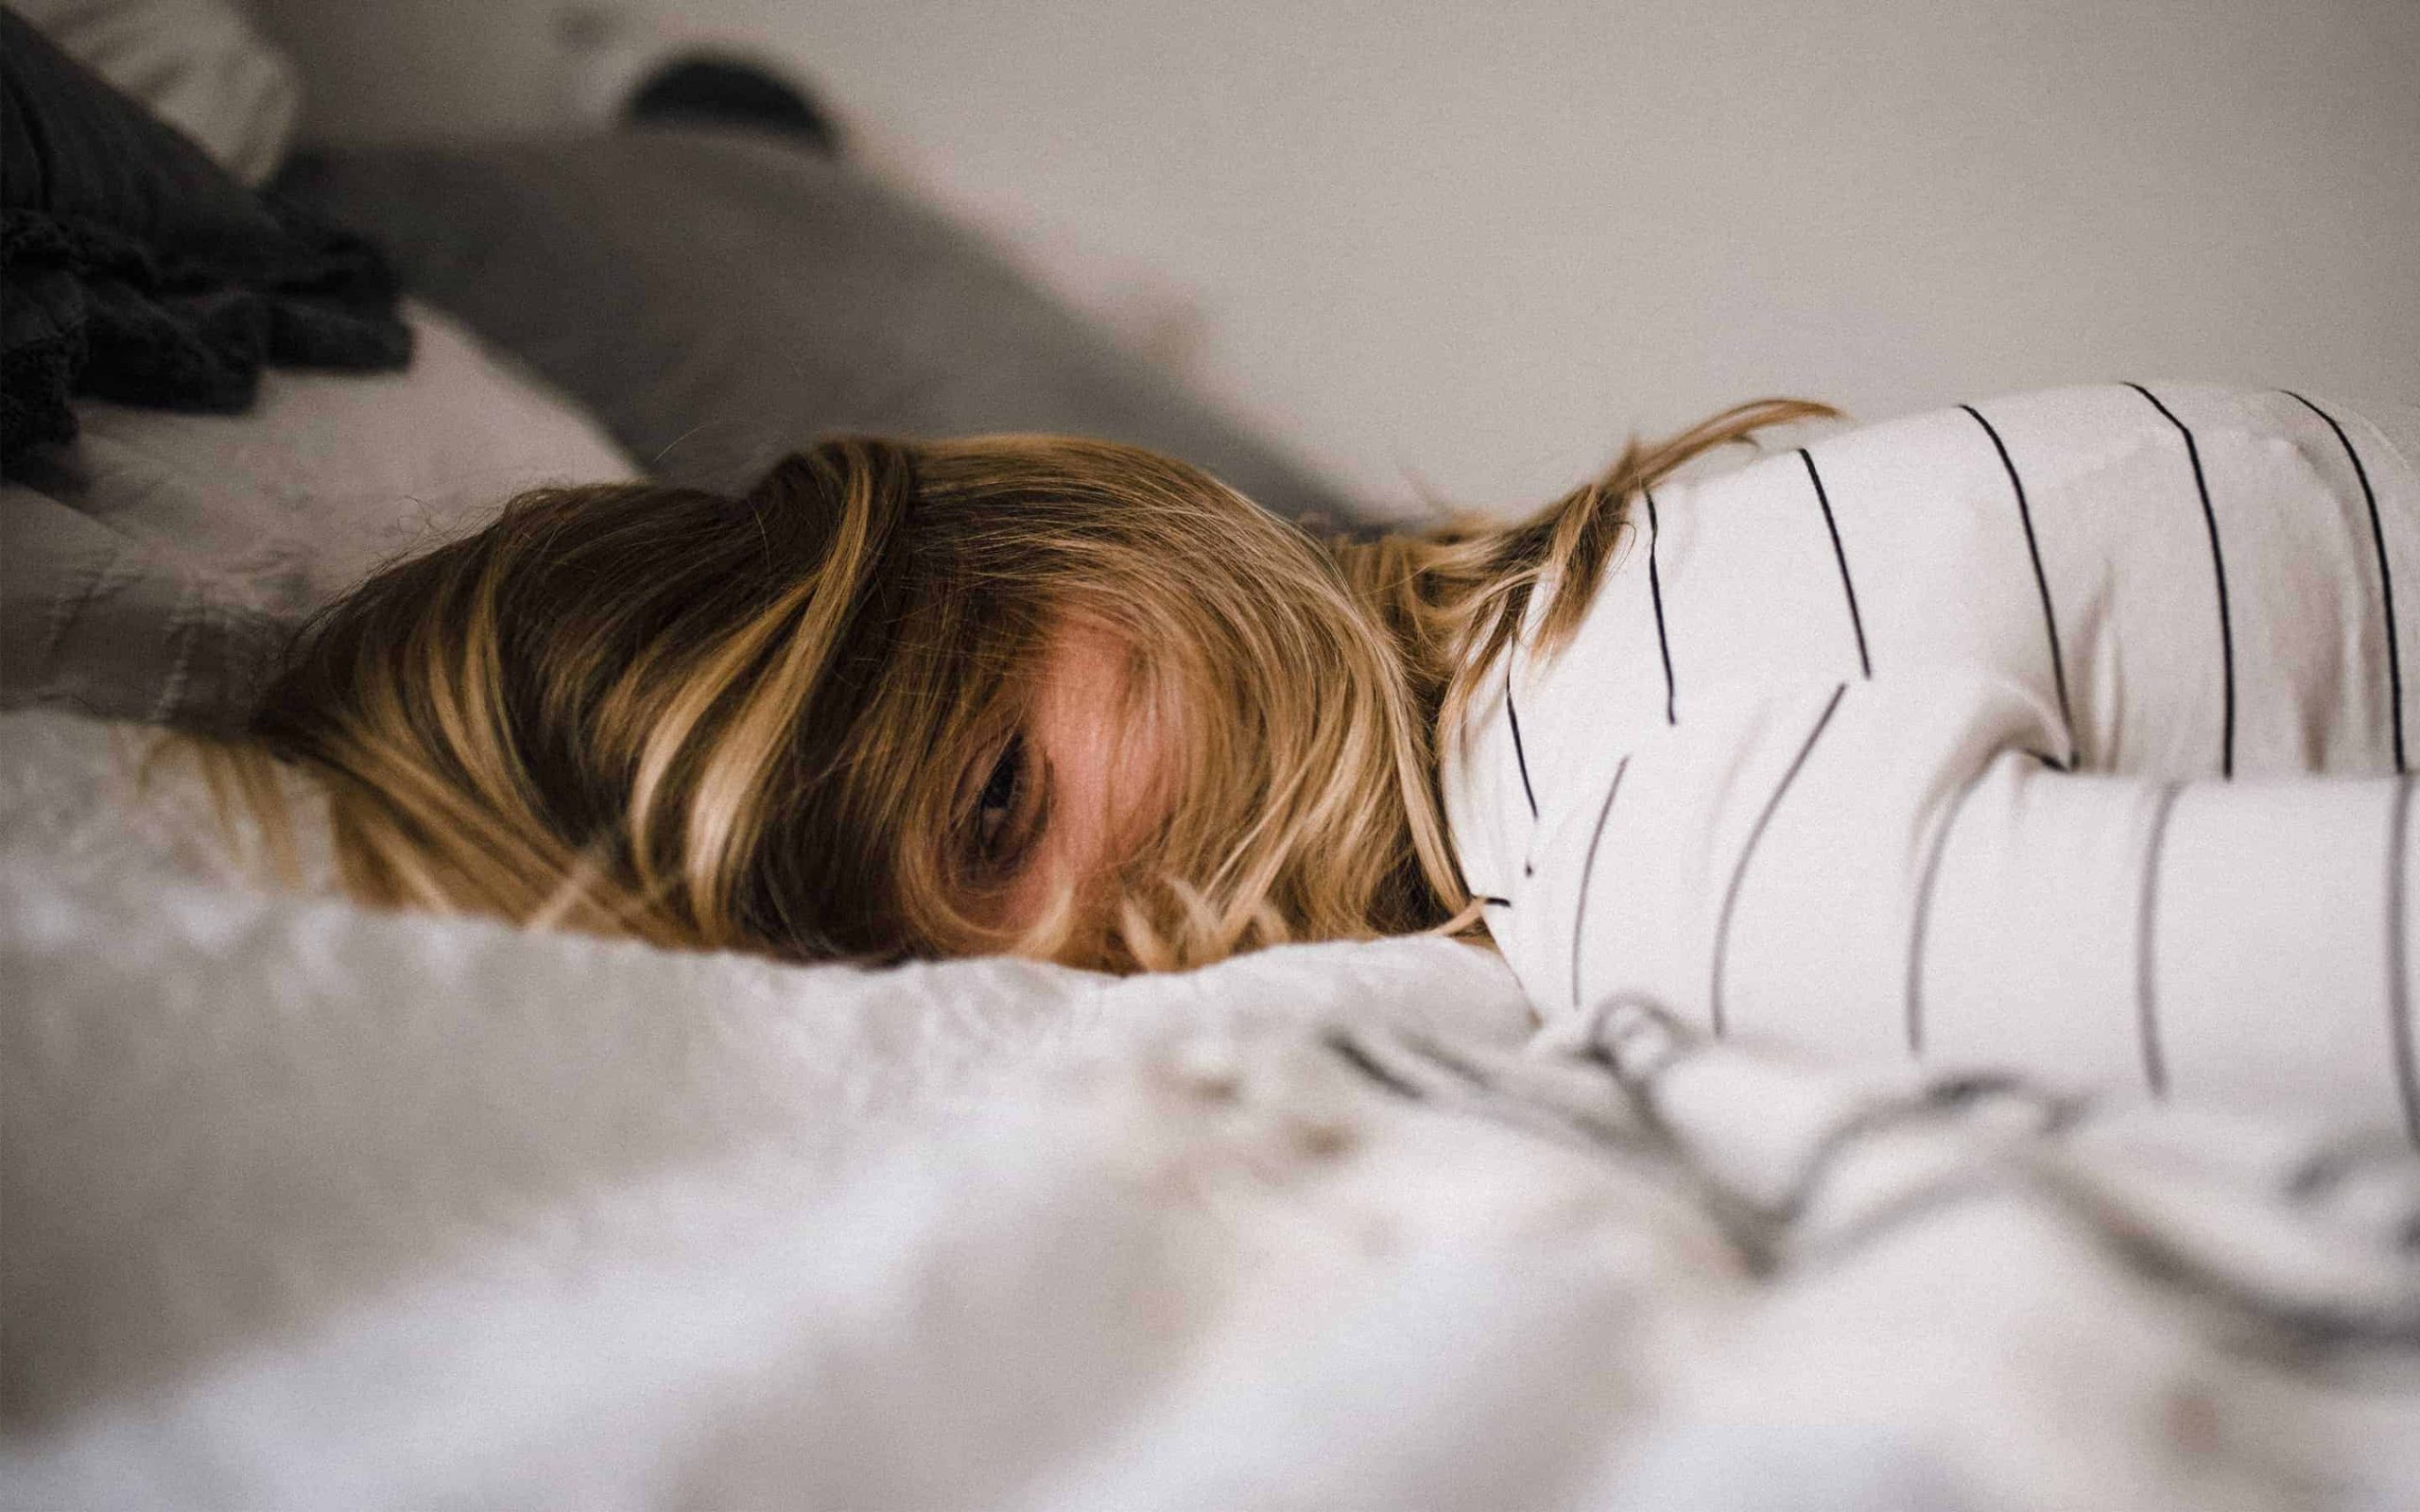 تعمل الغدة الصنوبرية على تنظيم دورة النوم وإنتاج الميلاتونين، الذي يشارك في عملية النوم الأكثر هدوءًا أو أقل.